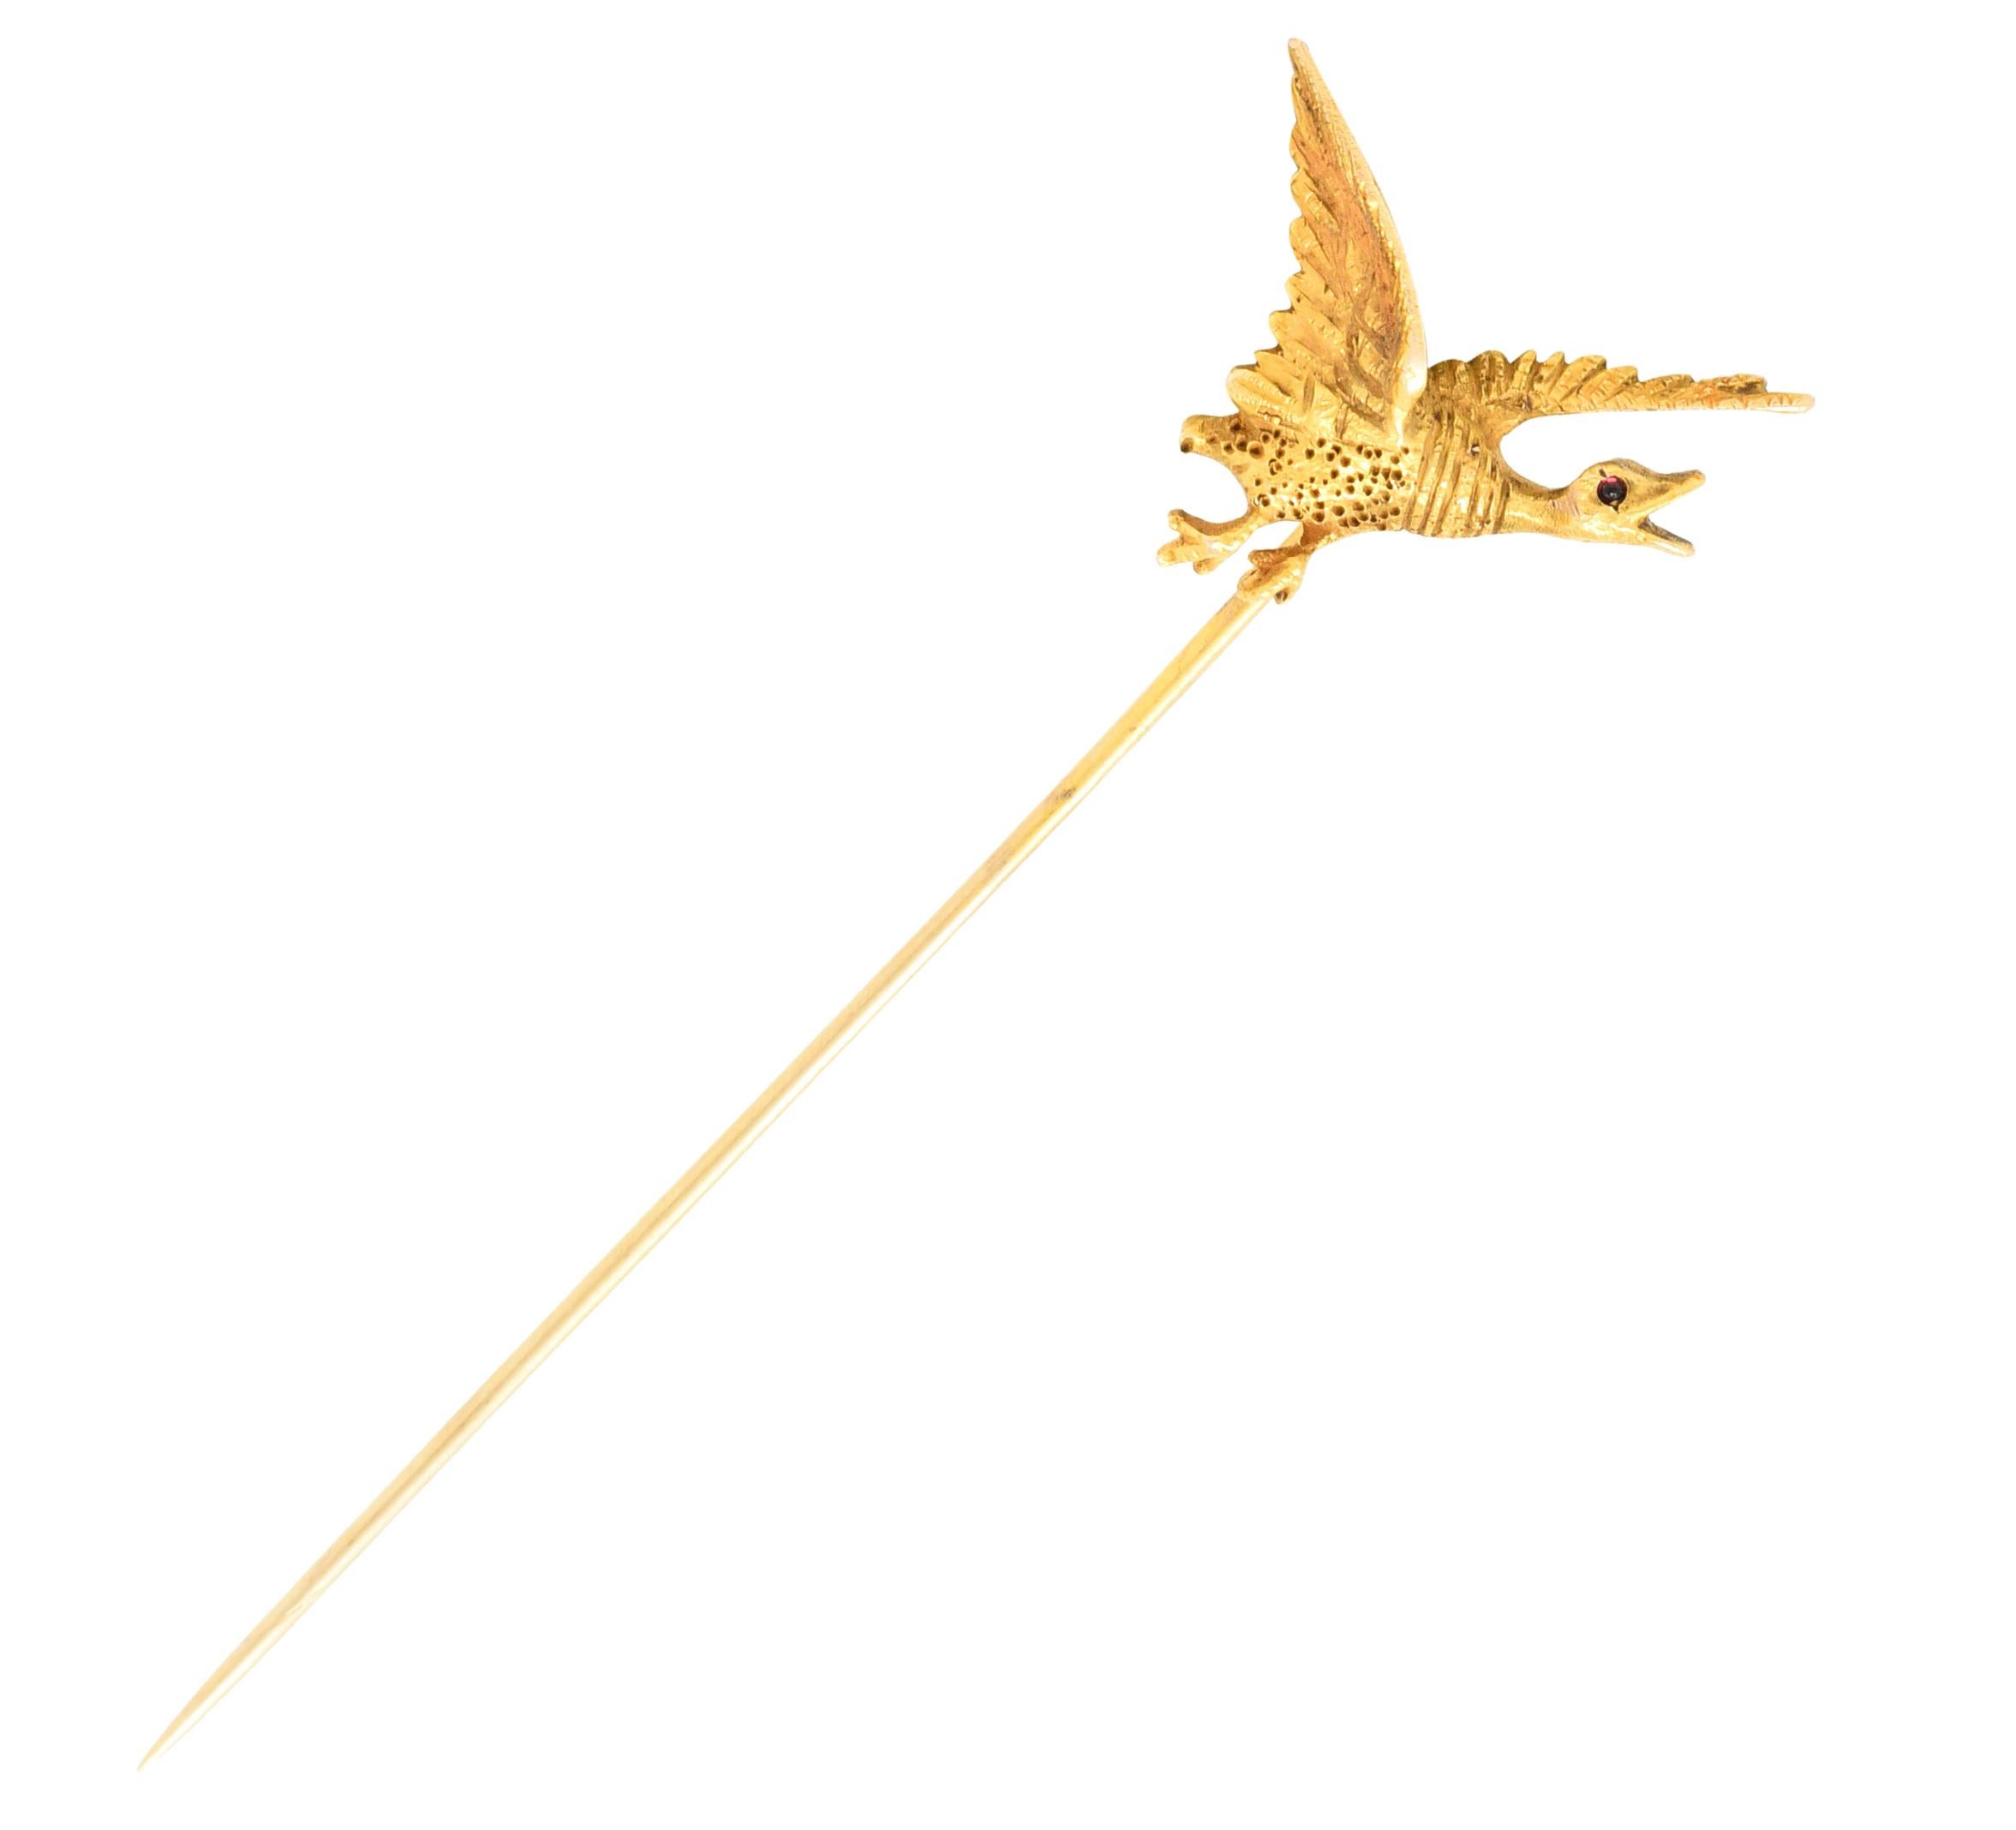 Entworfen als Gans mit ausgebreiteten Flügeln im Flug

Mit stark ausgeprägtem Federkleid und gesprenkeltem Körper

Auge ist ein runder Cabochon aus Granat - mittel-dunkel violett-rot

Geprüft als 14 Karat Gold

CIRCA: 1900

Gans misst: 13/16 x 7/8